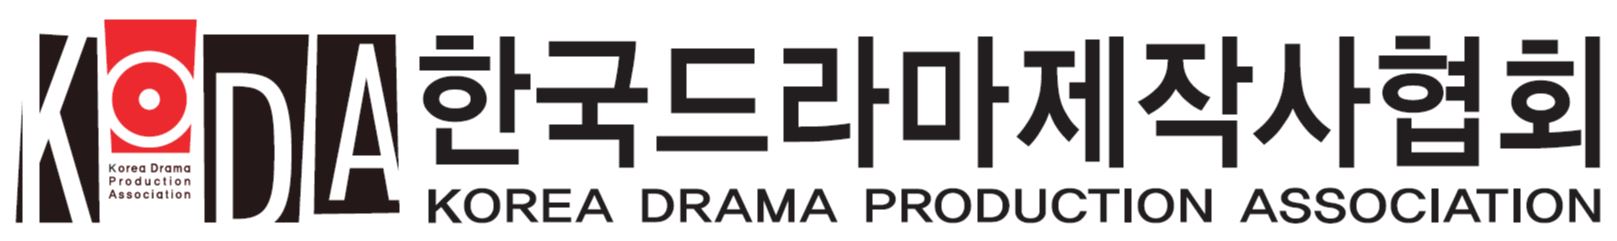 (사)한국드라마제작사협회의 기업로고